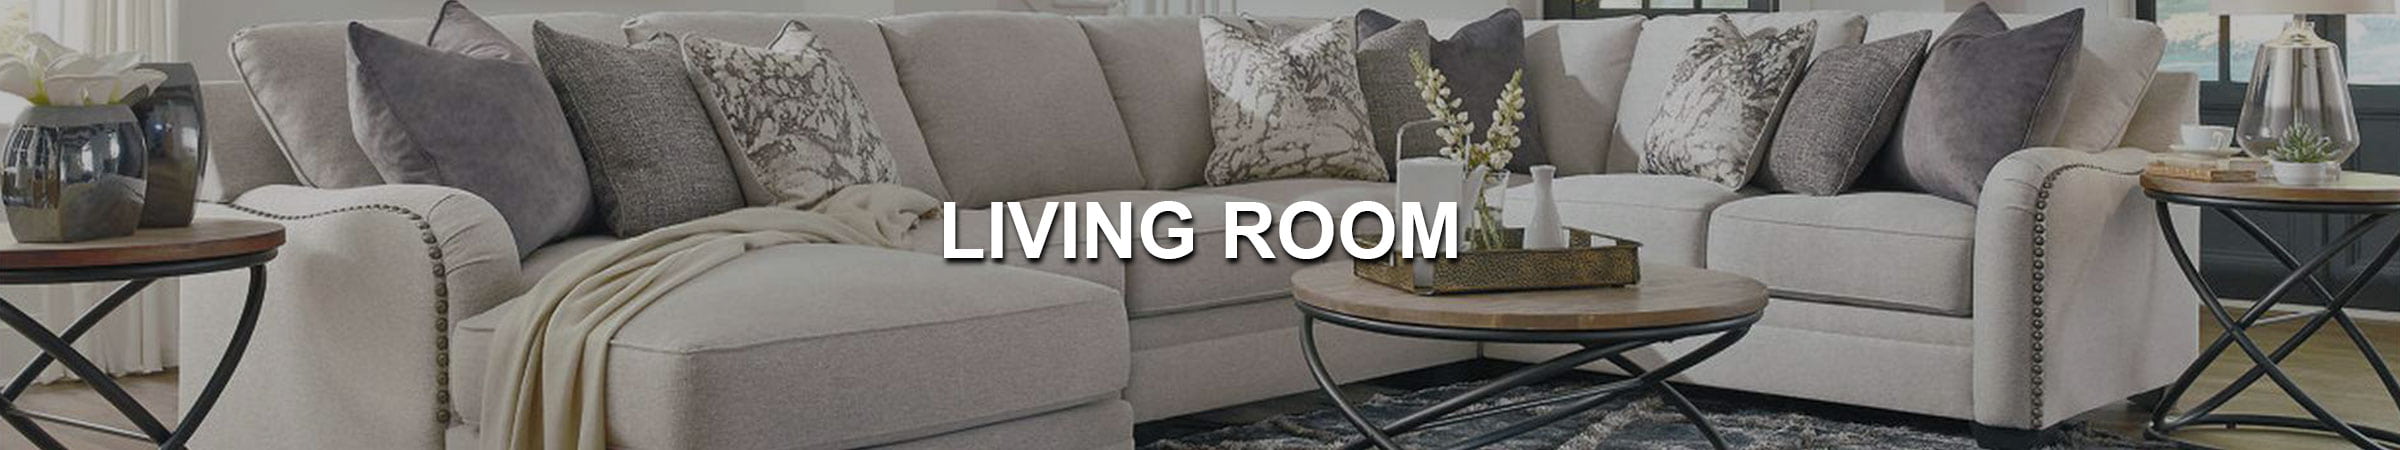 Living Room Banner